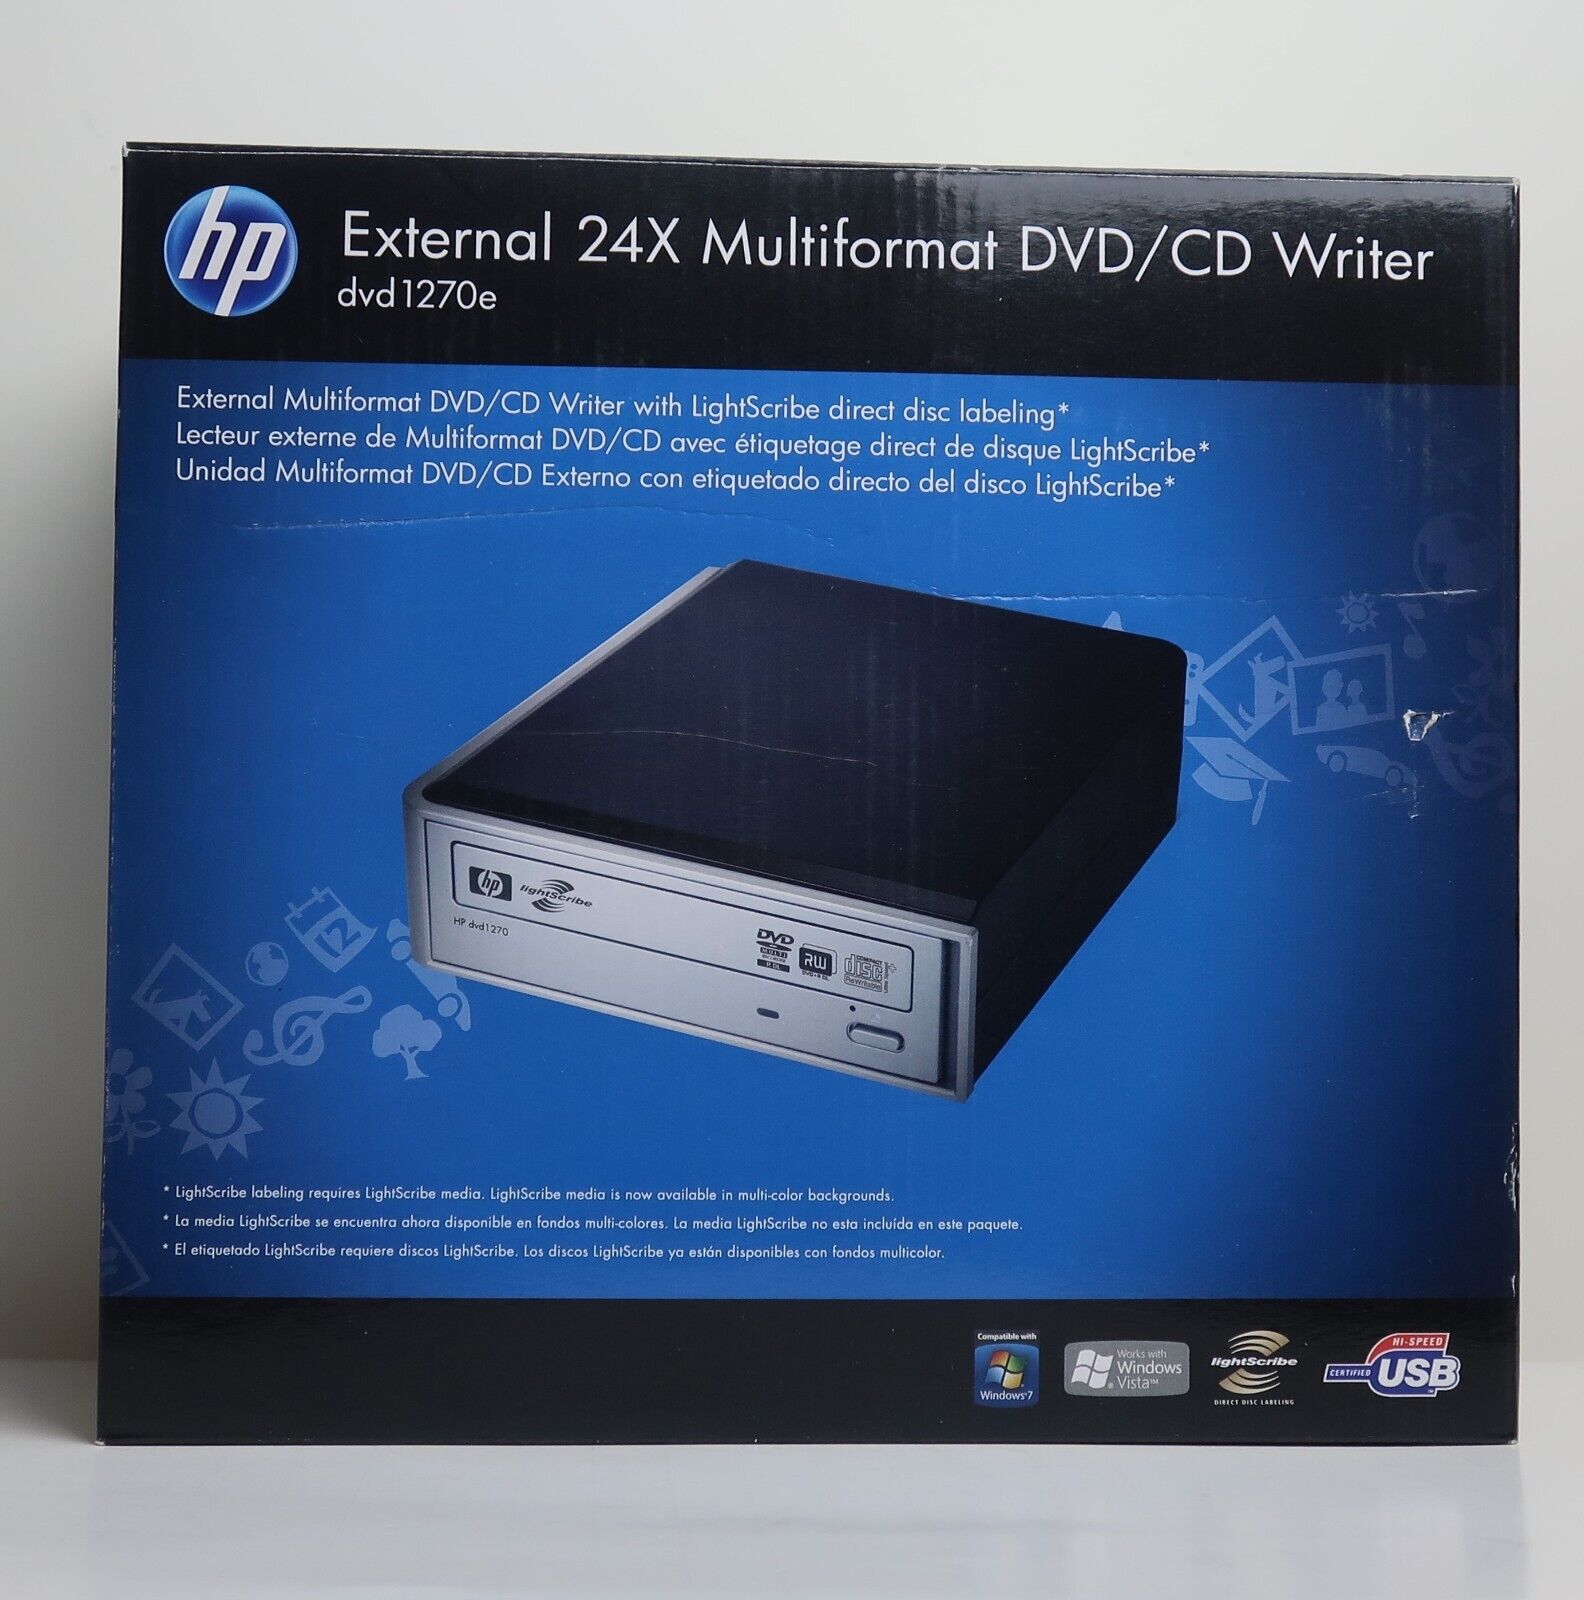 HP External 24X Multiformat DVD/CD Writer 